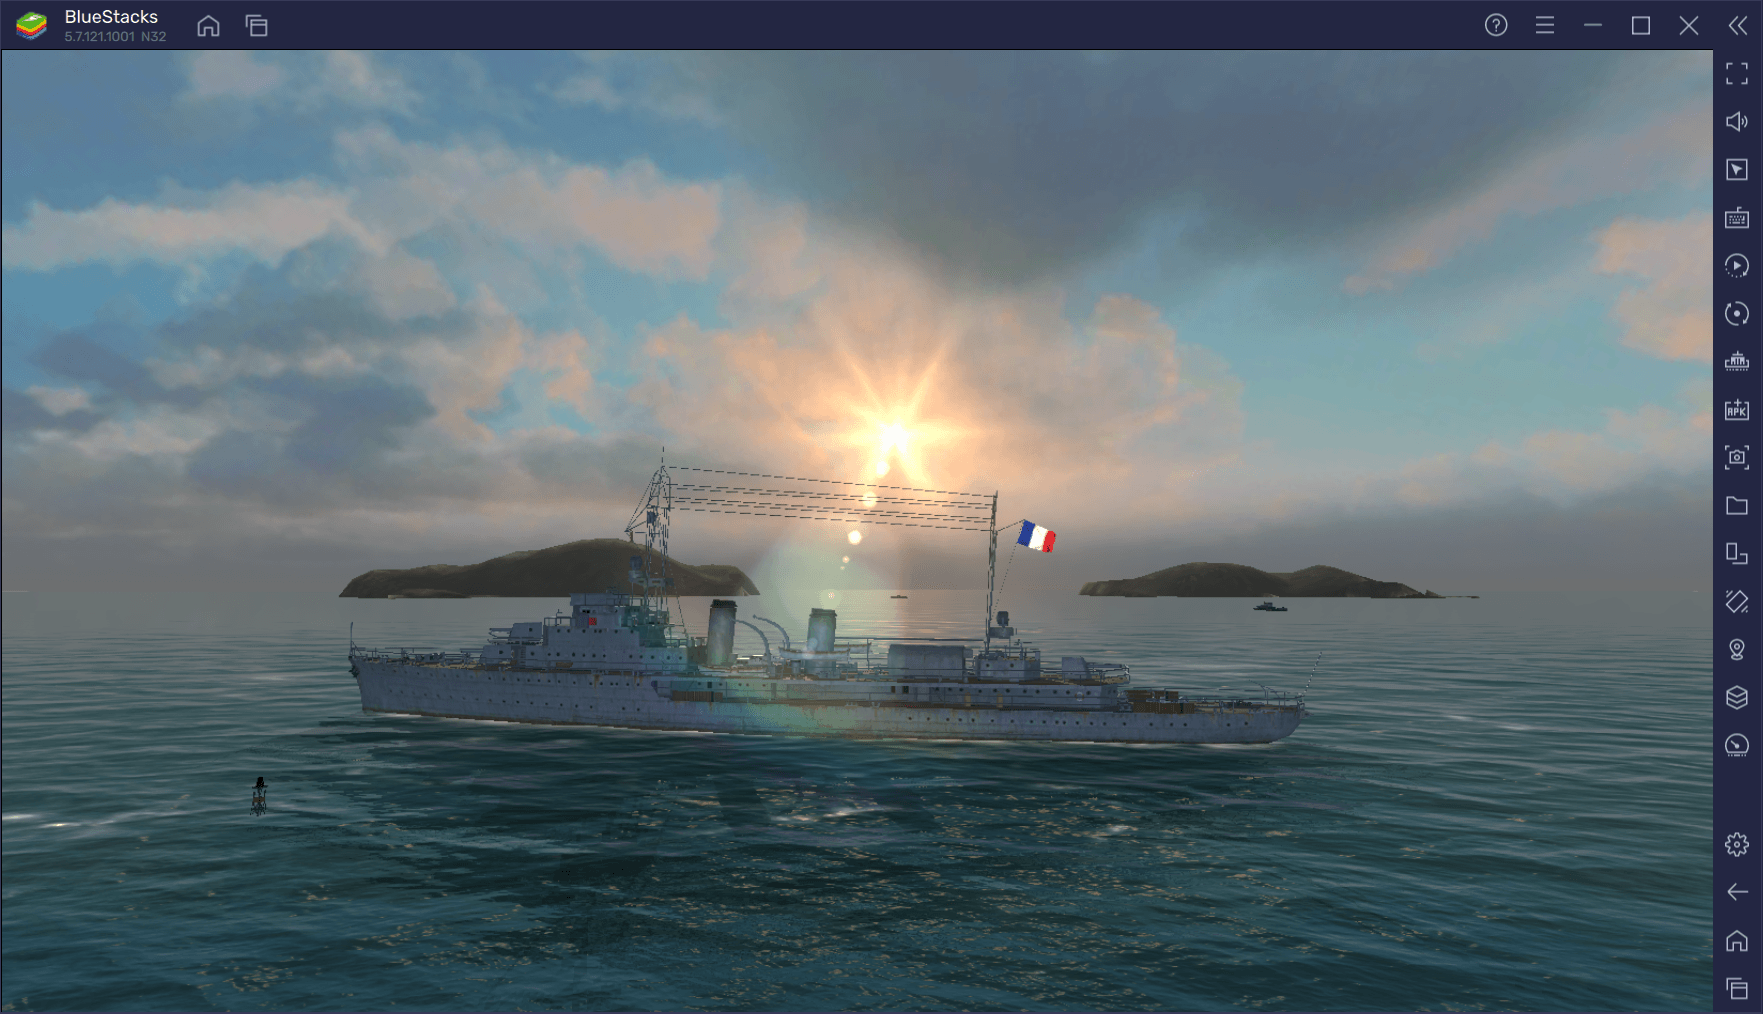 Инструменты BlueStacks для игры в World of Warships Blitz на ПК